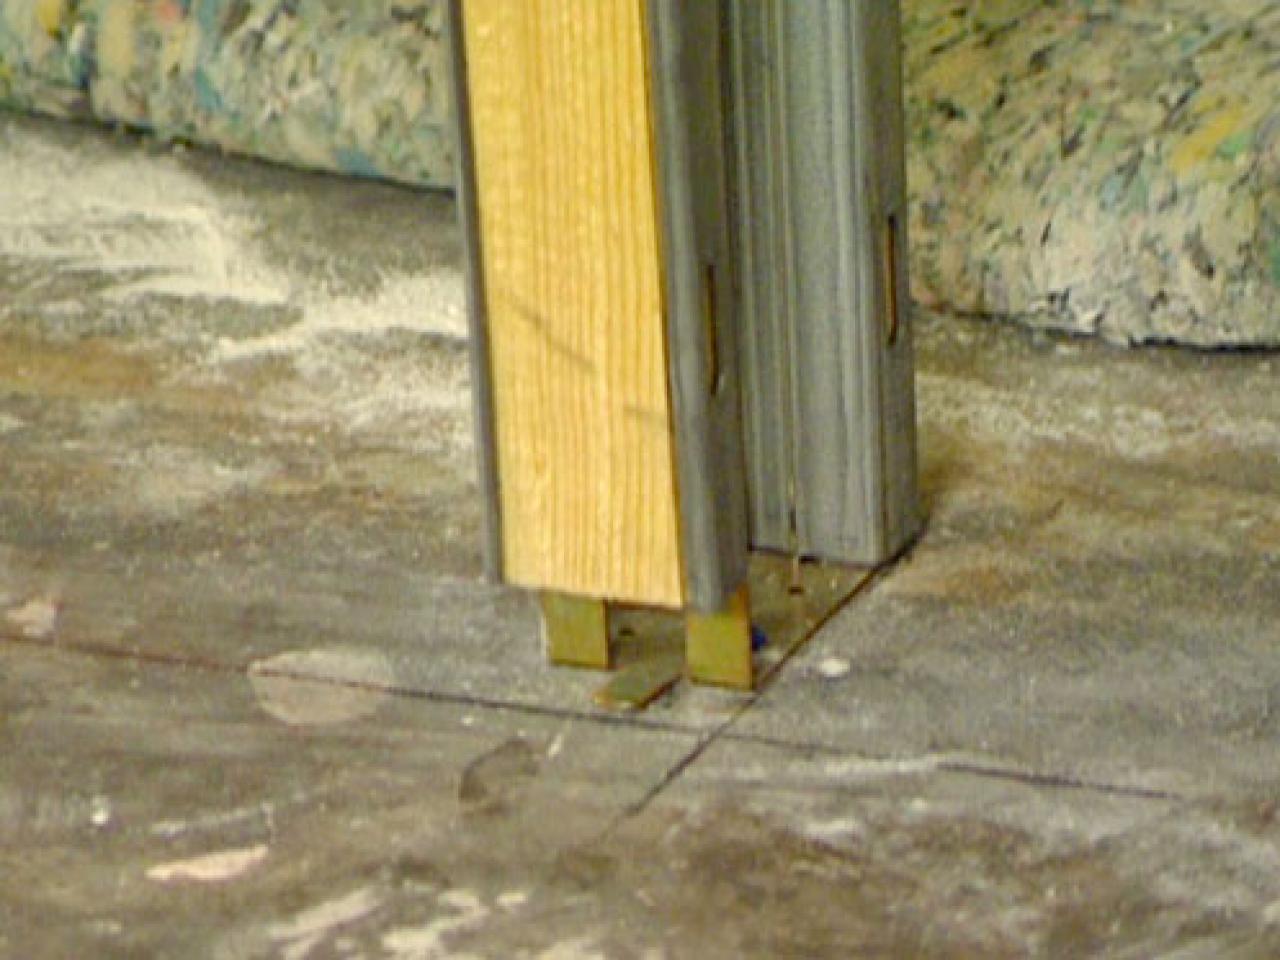 door pocket install studs diy floor frame attach header split doors steel hardware plywood johnson